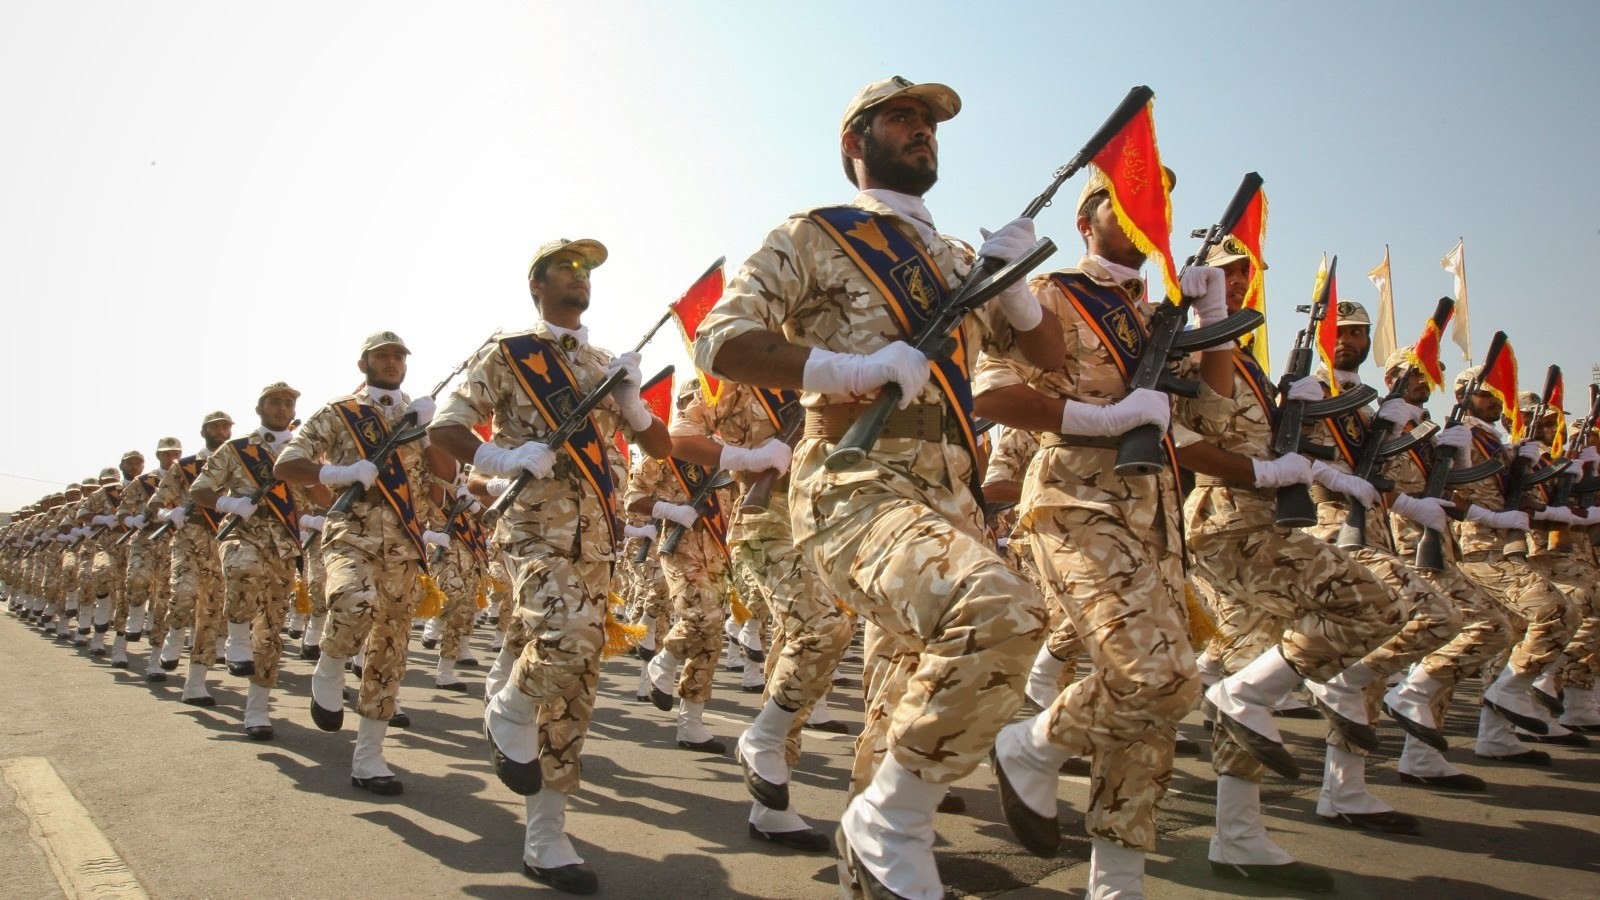 الحرس الثوري هو فصيل عسكري مسلح في إيران يدير إمبراطورية أعمال وميليشيات مسلحة أبرزها فيلق القدس -الذراع الخارجية للحرس الثوري-